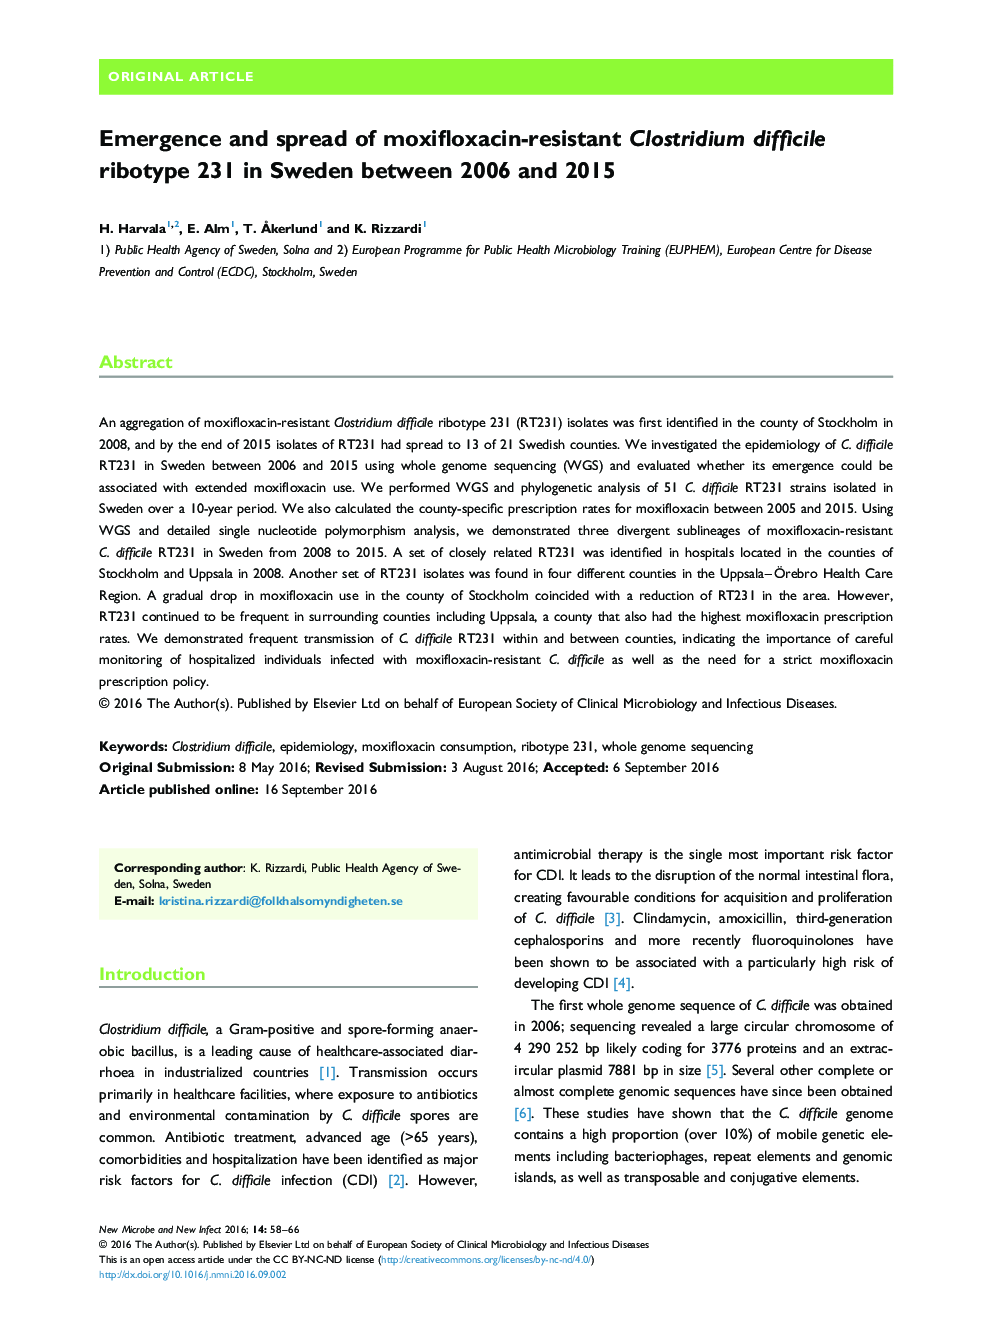 ظهور و گسترش مقاوم در برابر مکسیفلوکساسین مقاوم به کلستریدیوم دیفیسیل ریبوتیپ 231 در سوئد بین سالهای 2006 و 2015 